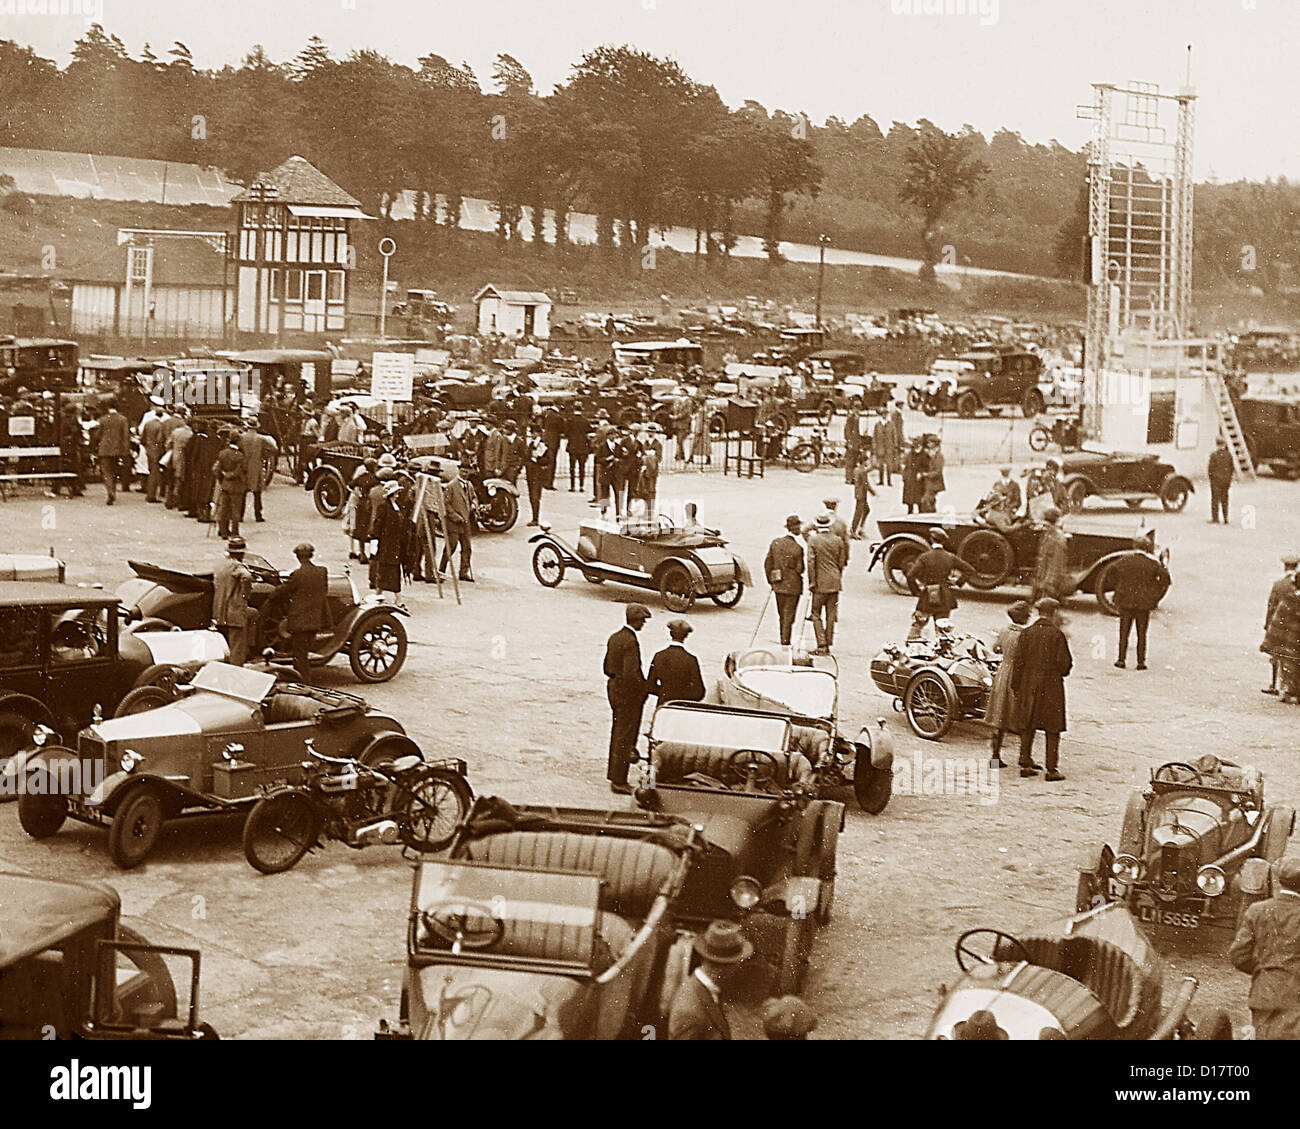 Brooklands-Rennstrecke - Fahrerlager möglicherweise der 1930er Jahre Stockfoto